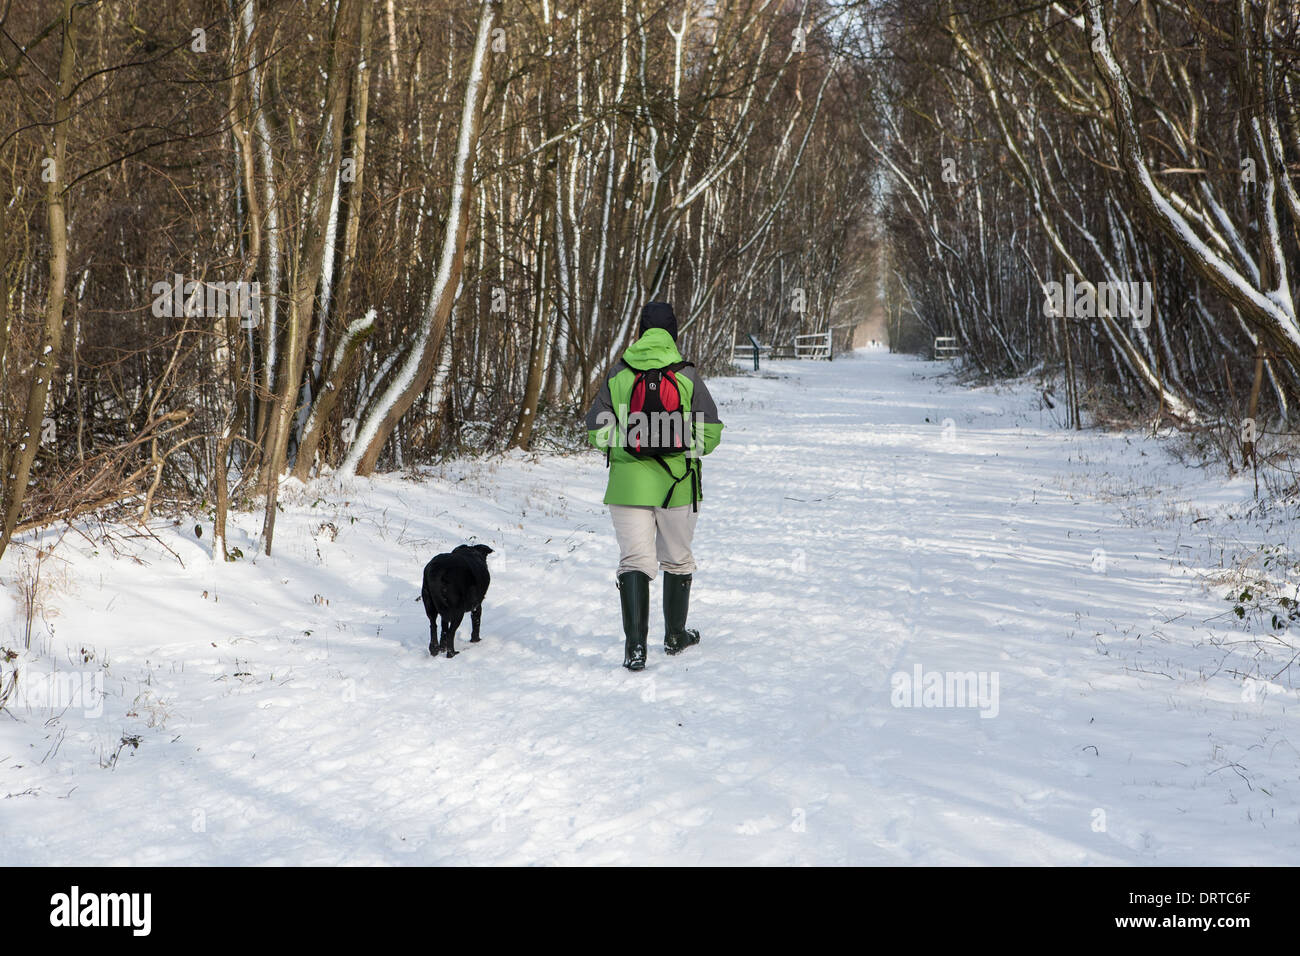 La promenade du chien dans la neige, Teesside, Angleterre Banque D'Images